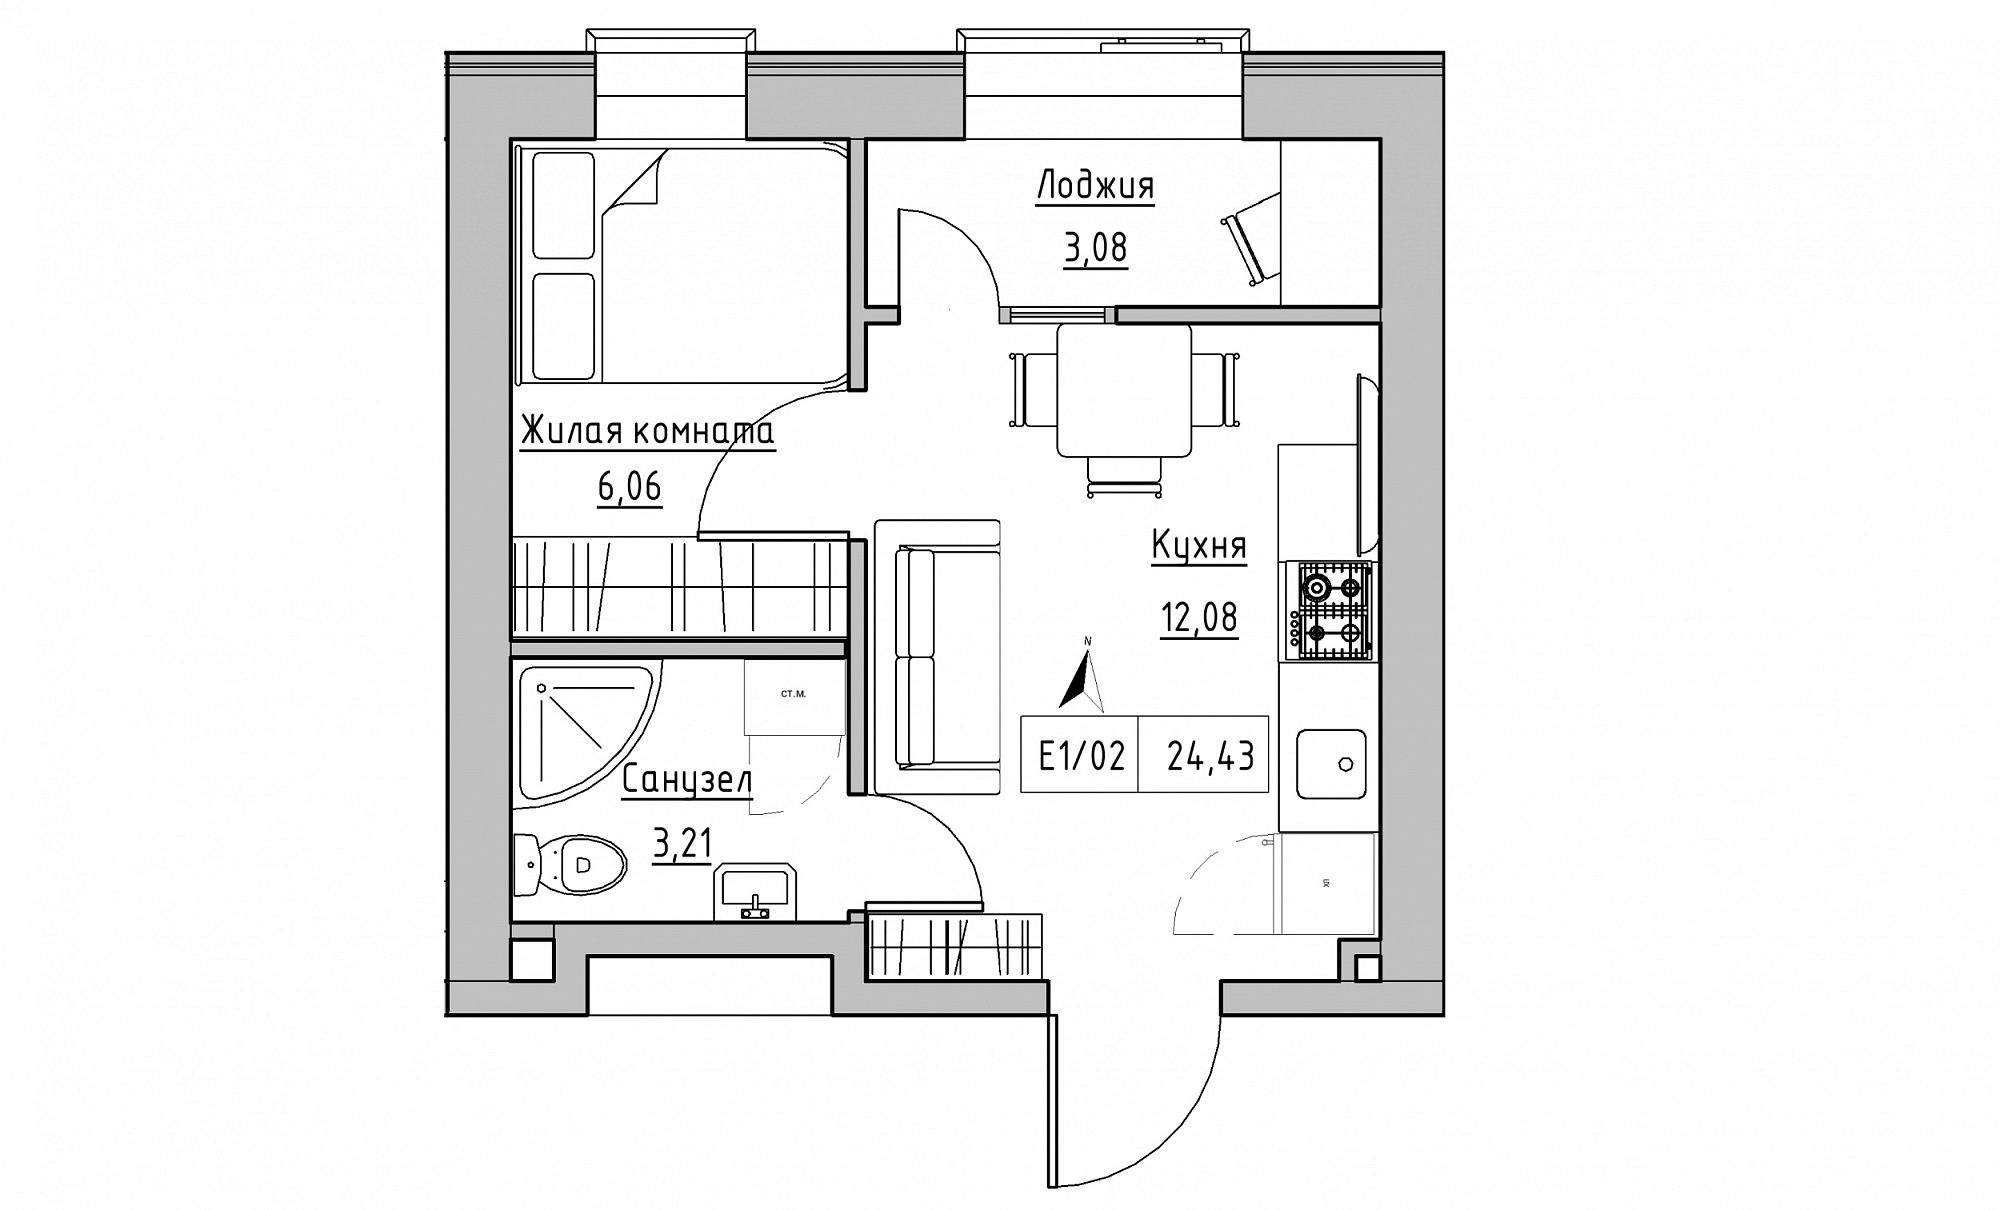 Планування 1-к квартира площею 24.43м2, KS-015-05/0017.